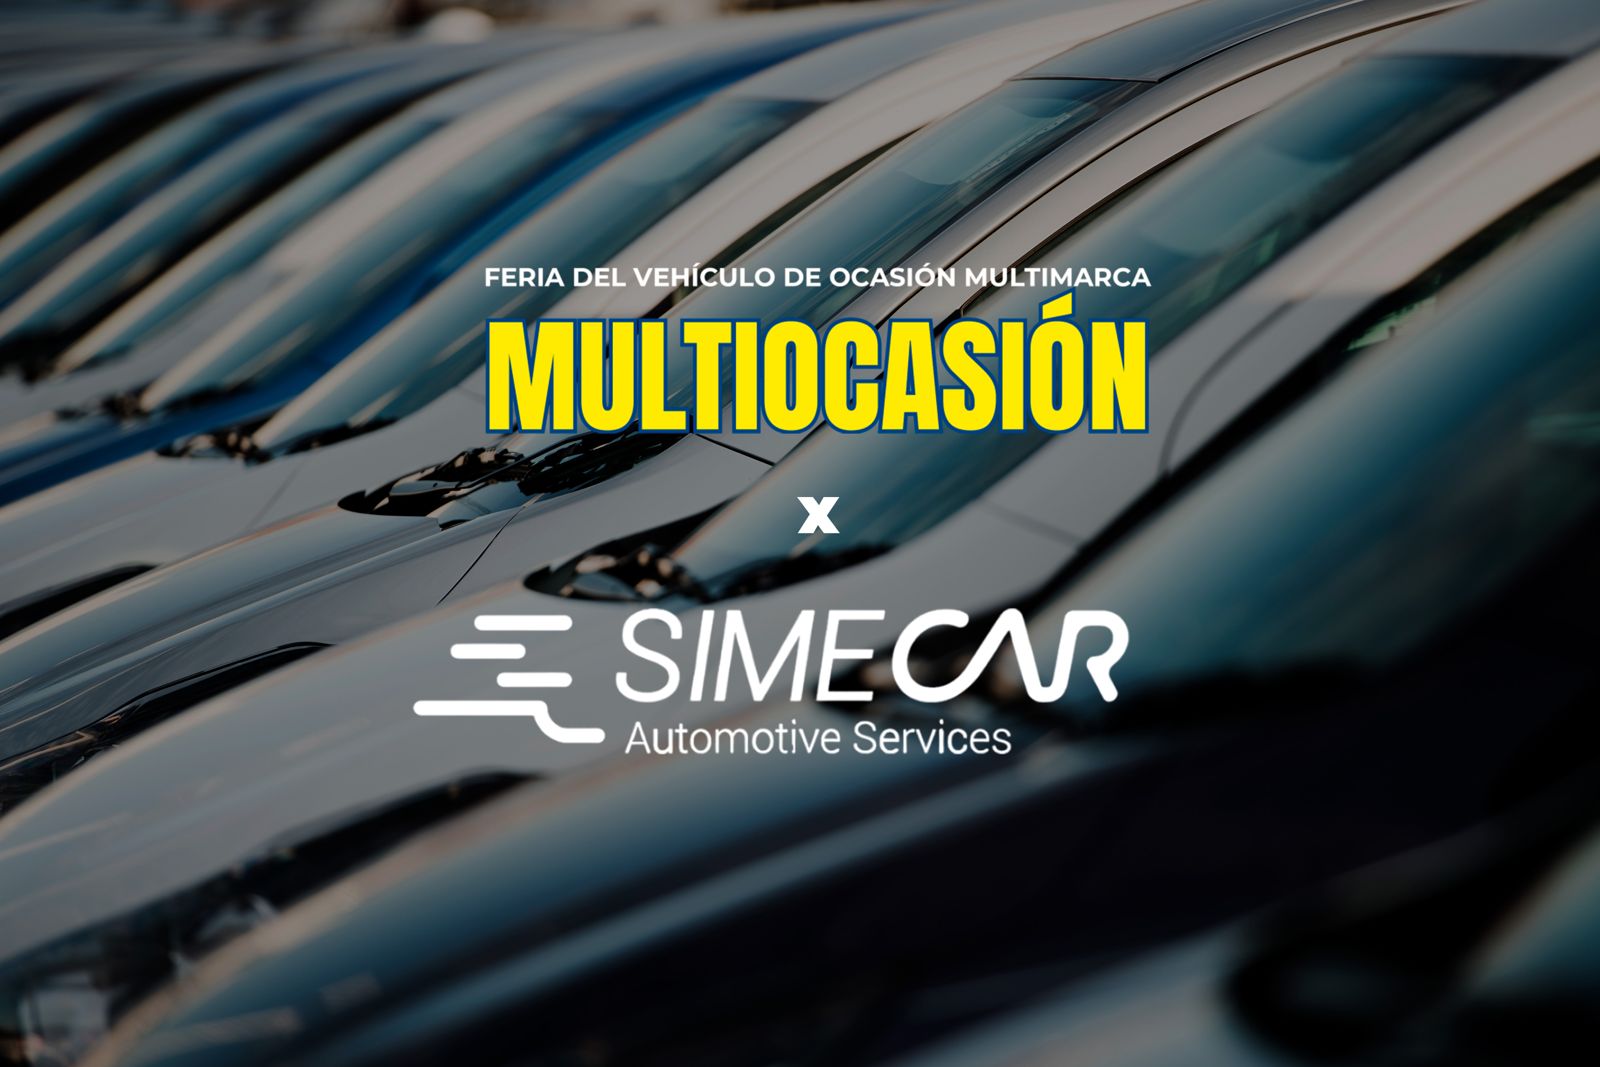 La Feria Multiocasión expuso más de 1.000 vehículos certificados por Simecar